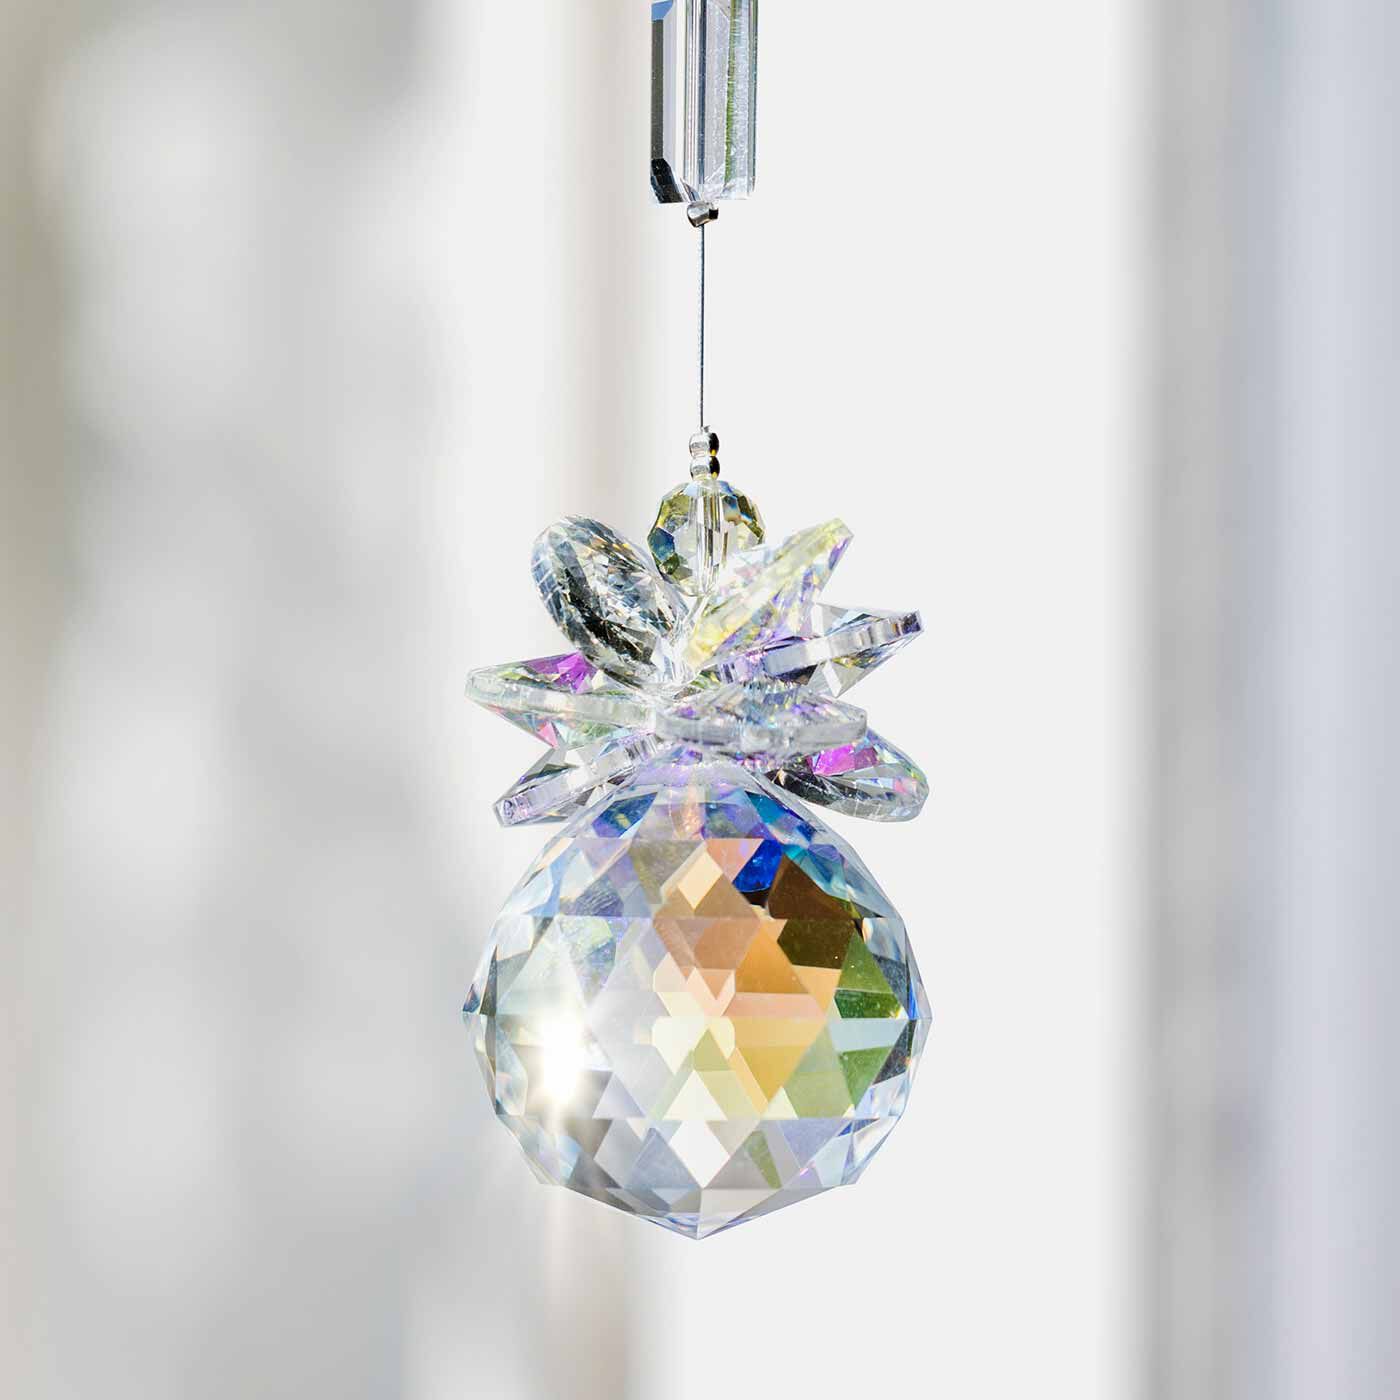 フェリシモメリー|See MONO お部屋に広がる光のシャワー 昼パーティーを彩るガラスのサンキャッチャー|七色の光の粒を生みだすオーロラ塗装のガラスパーツ。